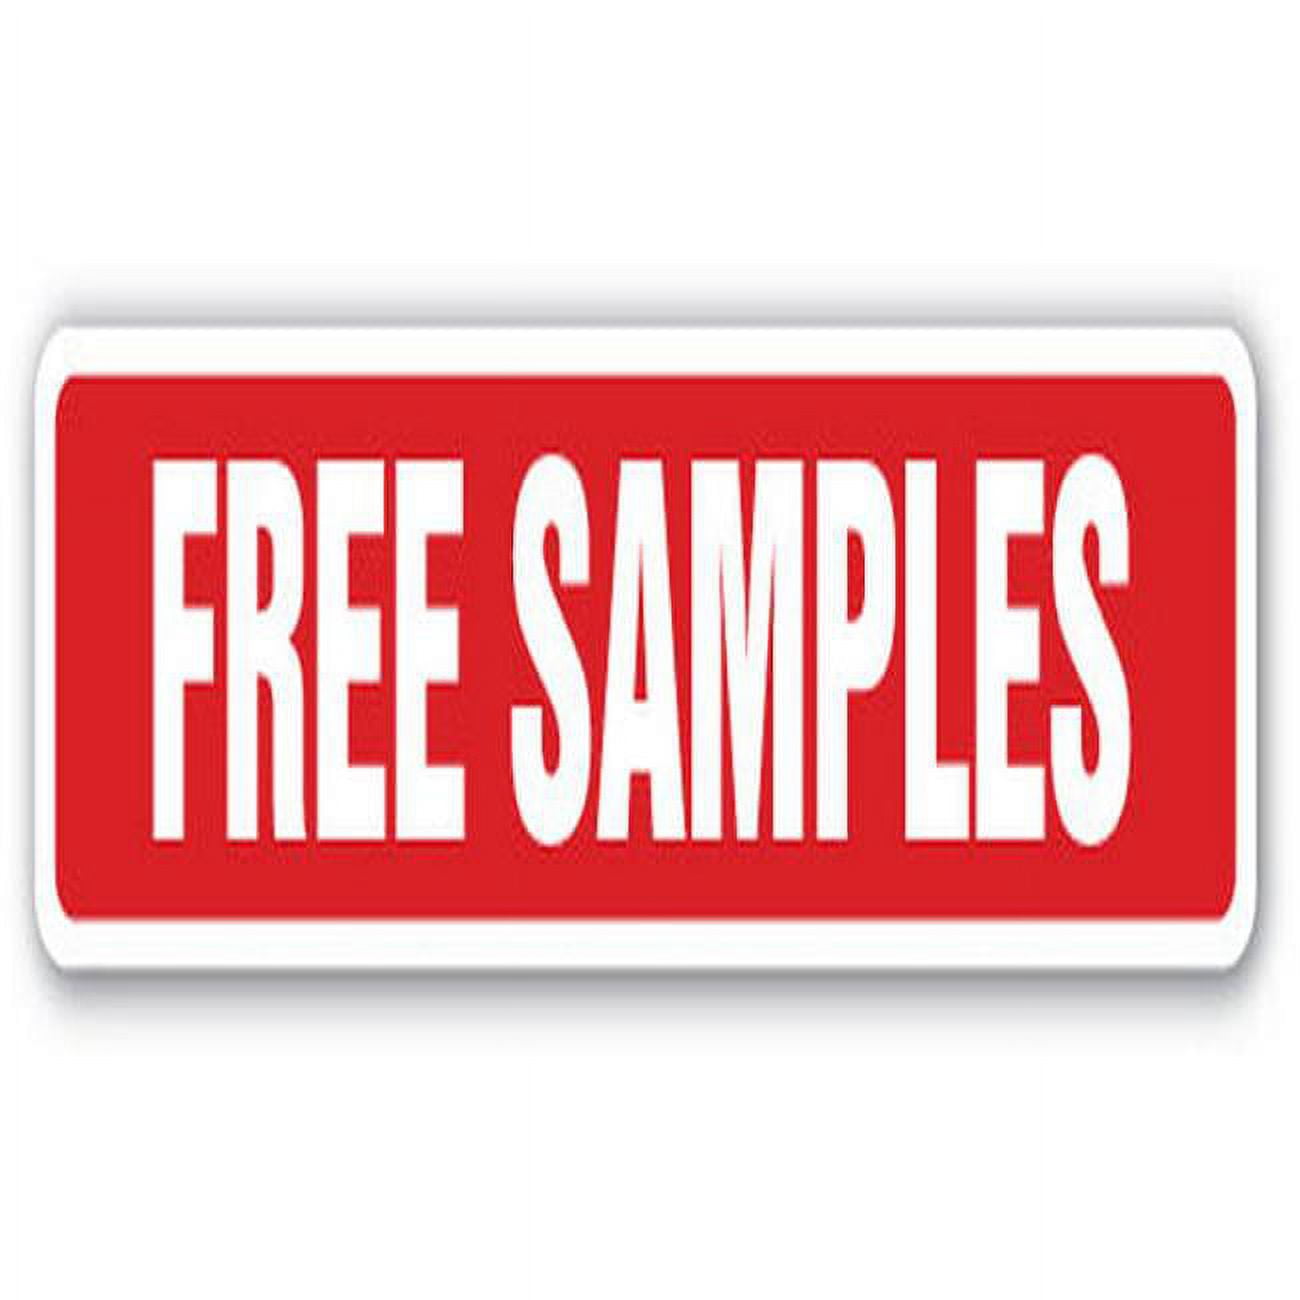 Freebie samples giveaway